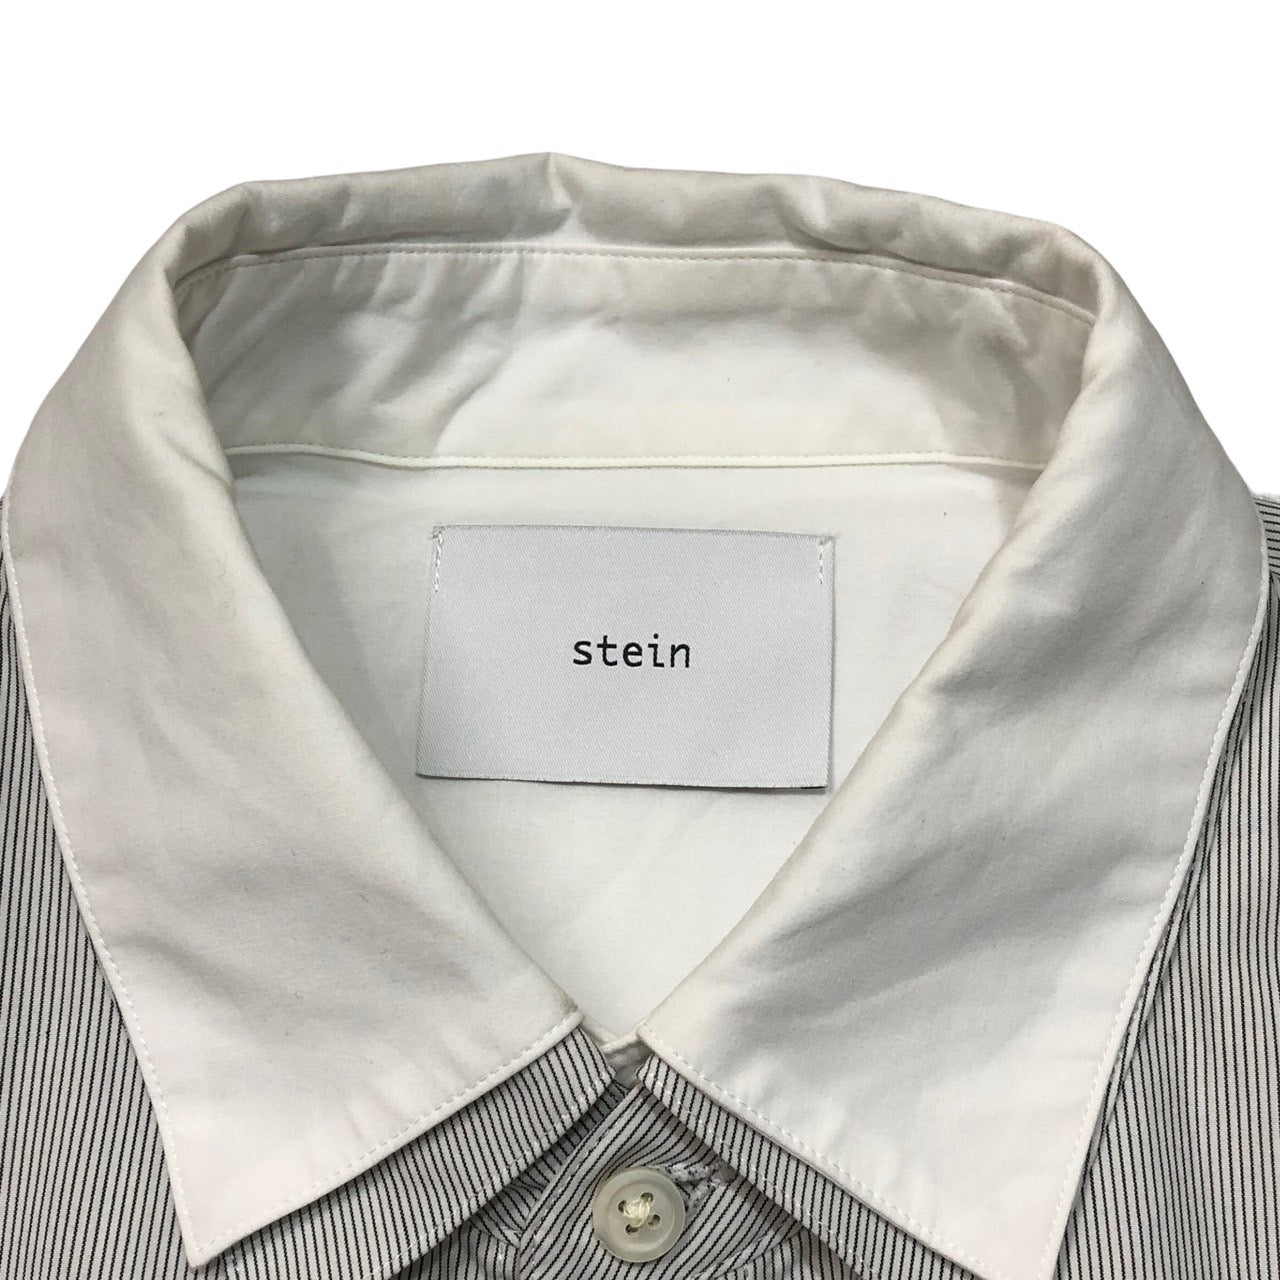 stein(シュタイン) OVERSIZED 4LAYERED SHIRT/オーバーサイズ4レイヤードシャツ ST.236 S  ホワイト×ベージュ/ストライプ